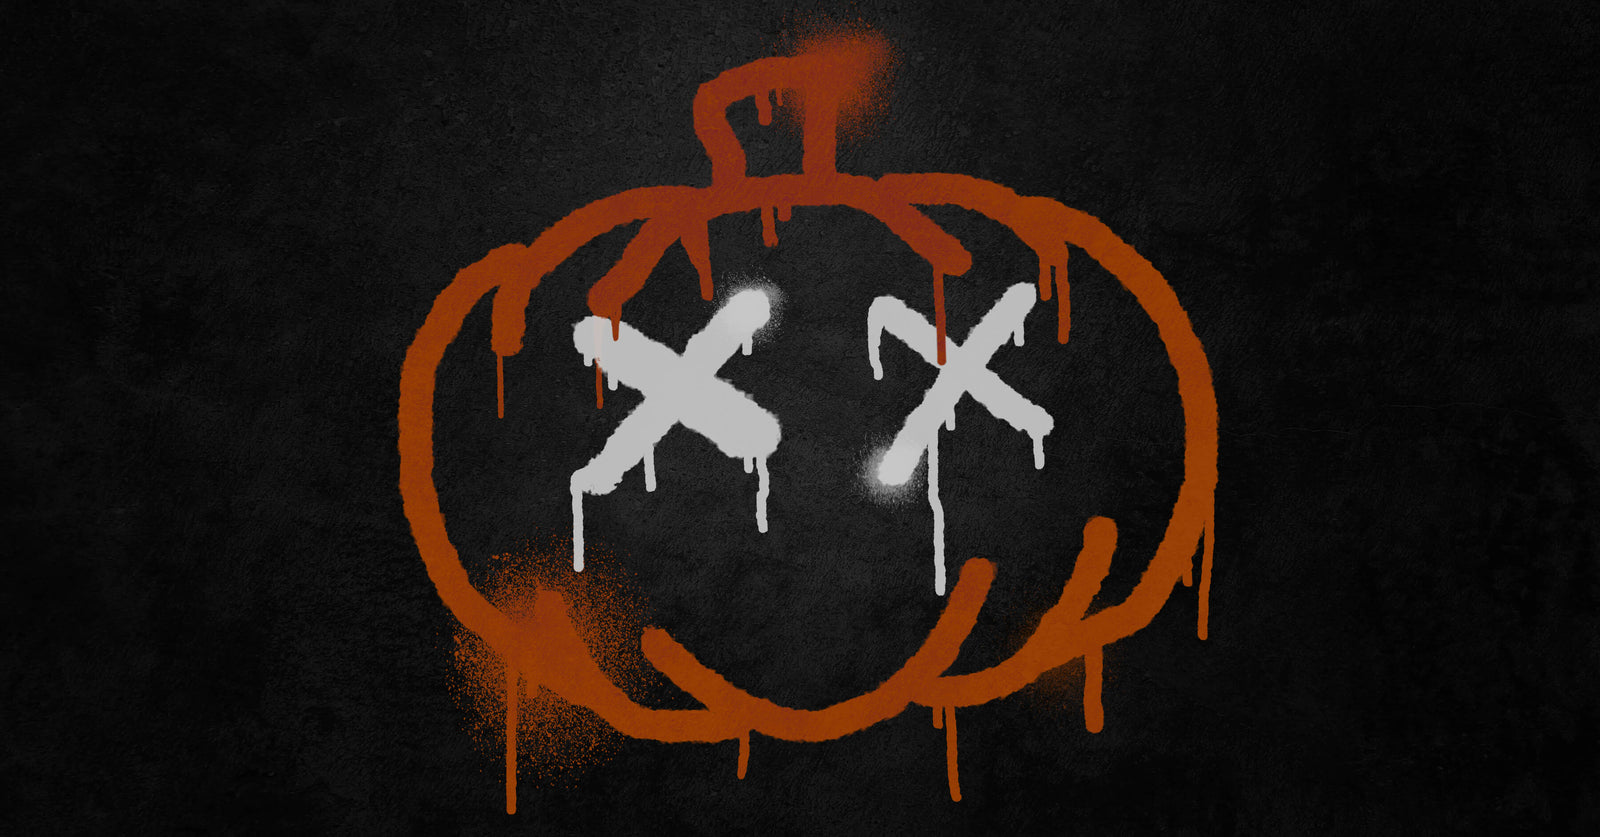 Graffiti pumpkin with X's as eyes